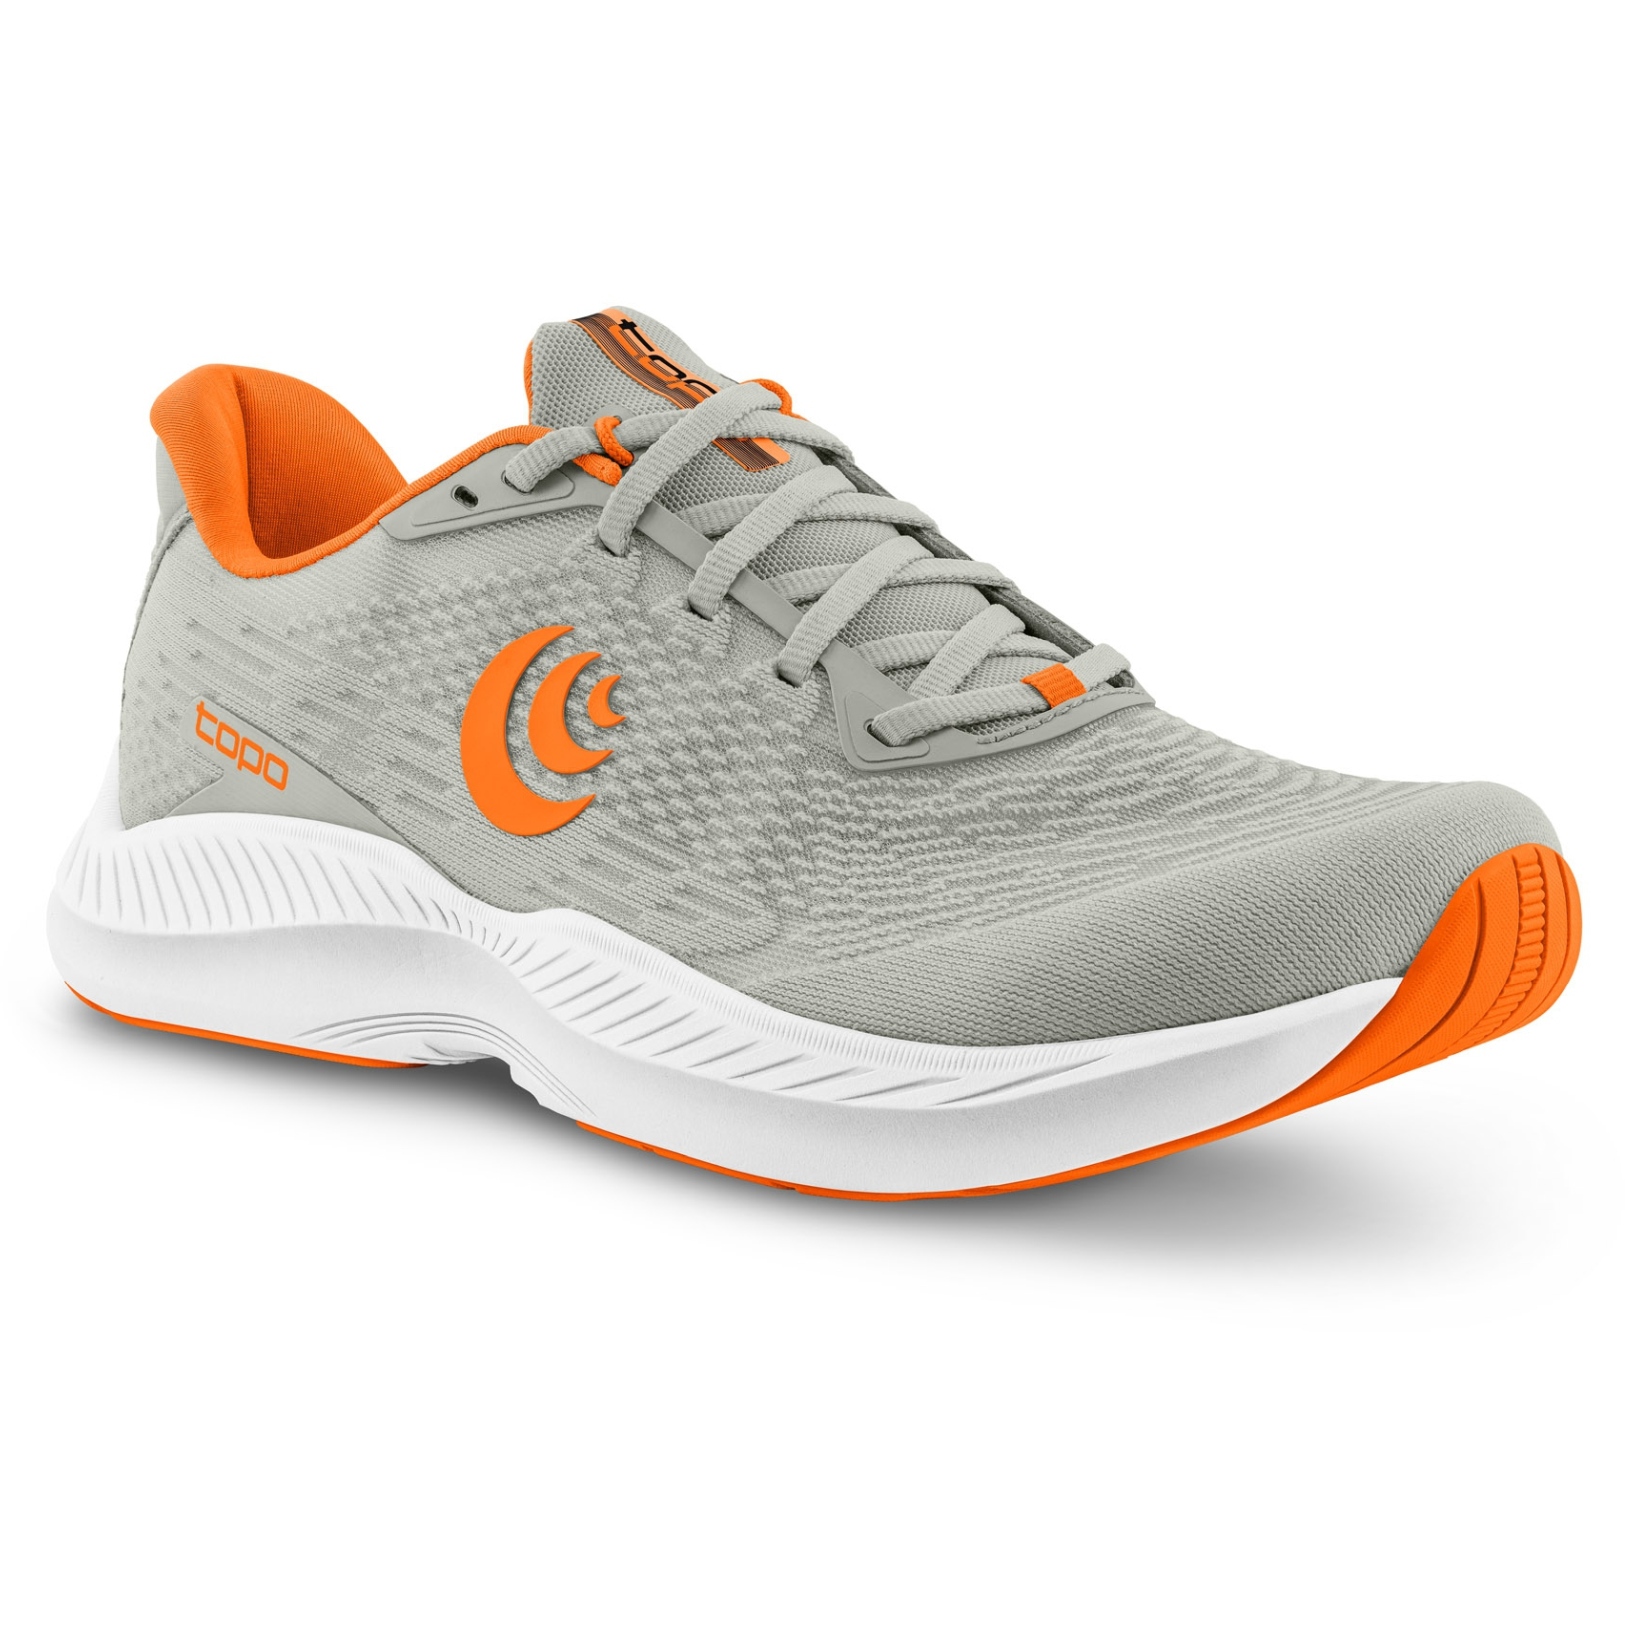 Productfoto van Topo Athletic Fli-Lyte 5 Hardloopschoenen - grijs/oranje